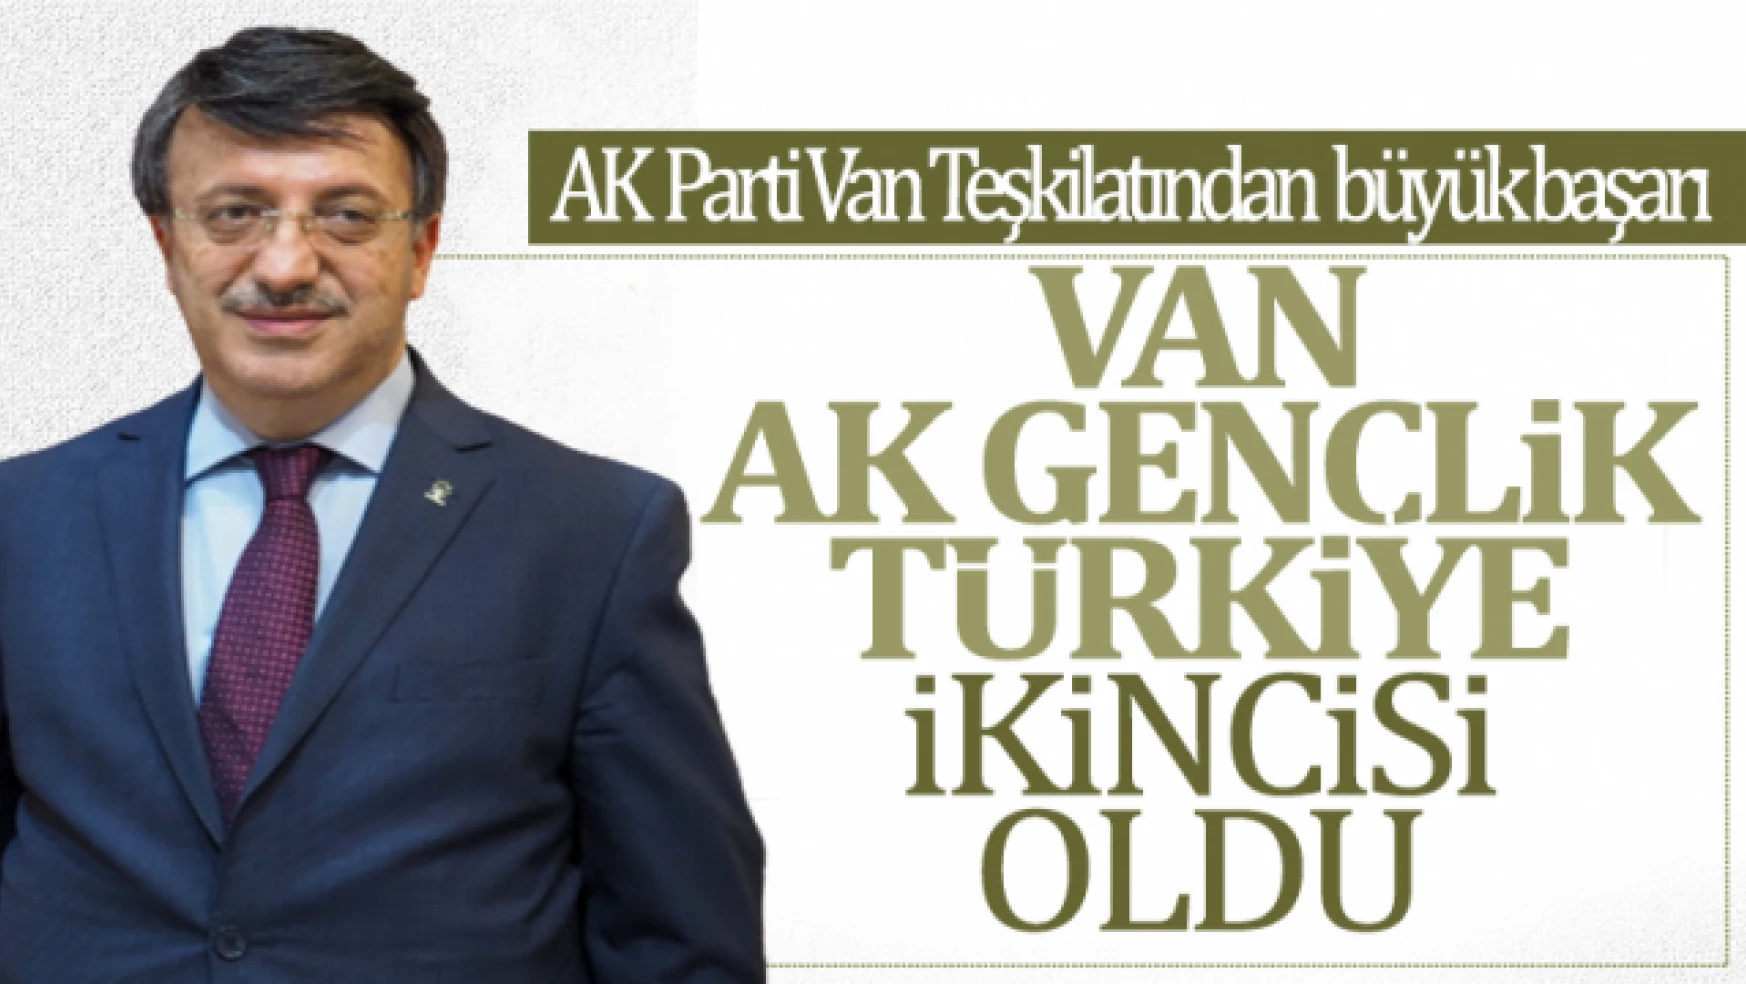 Van AK gençlik yeni üye sayısıyla Türkiye ikincisi oldu